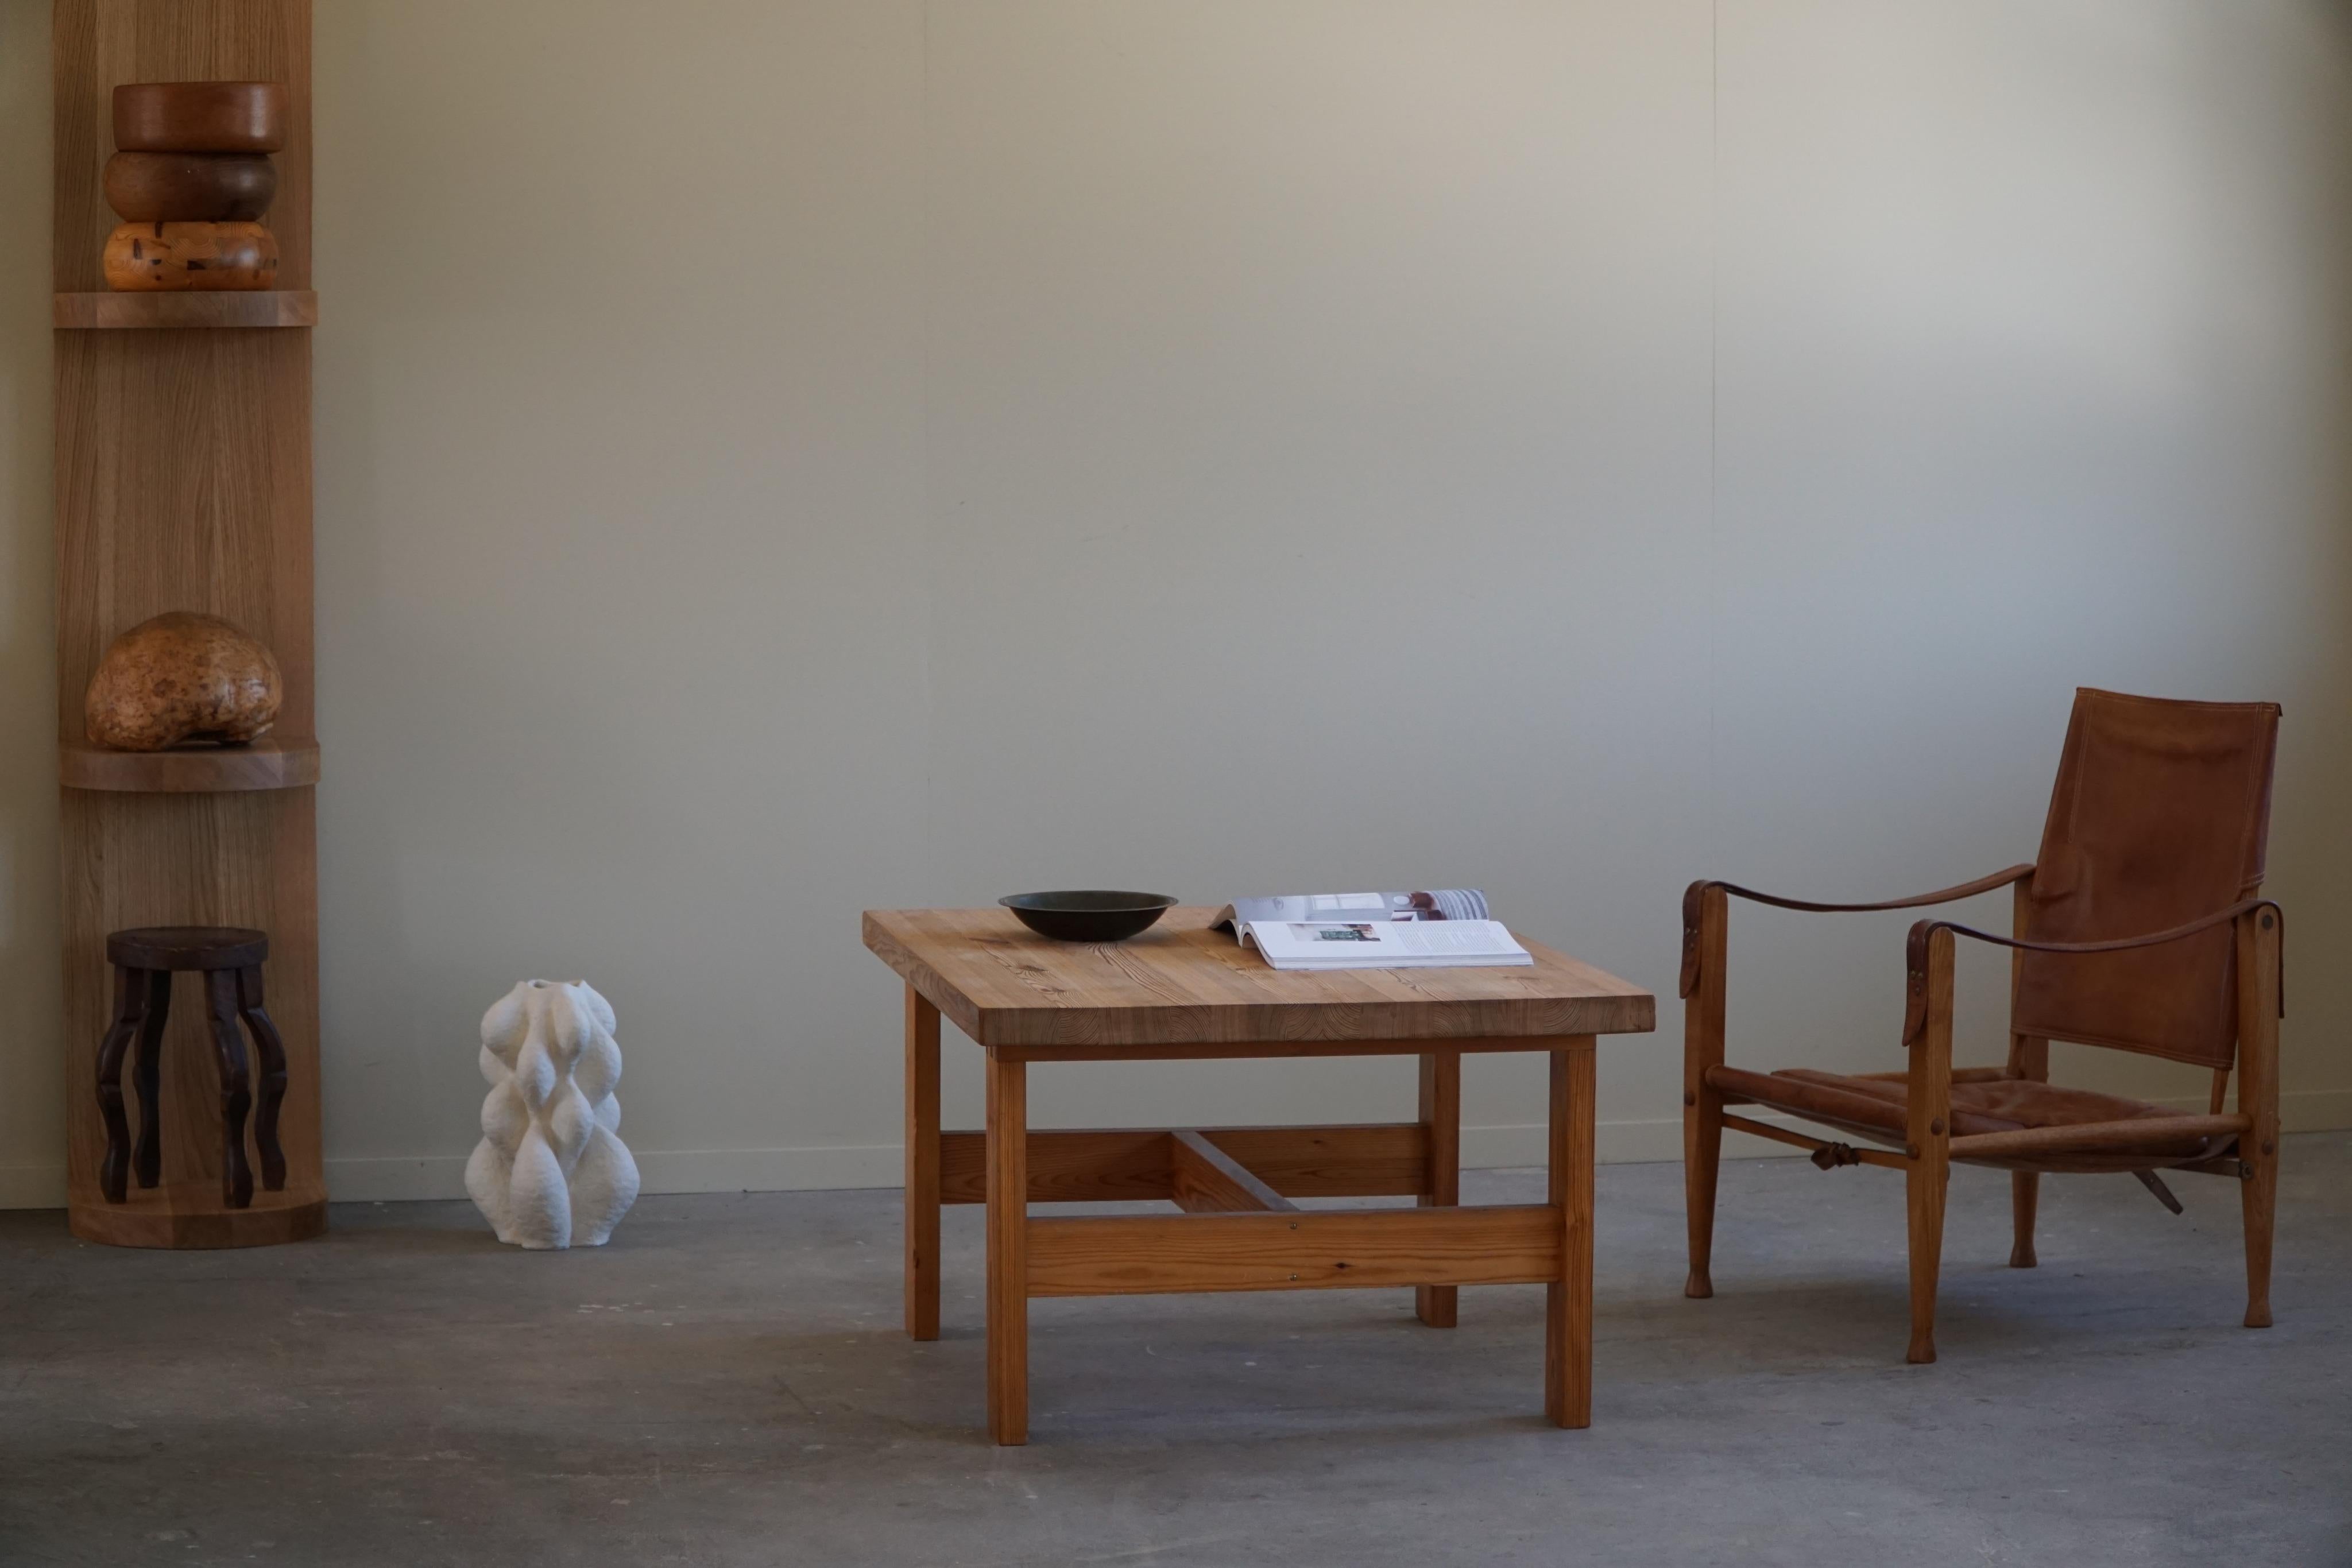 Voici un trésor de la modernité danoise des années 1960 - une table de canapé rectangulaire en pin massif qui respire le charme intemporel du design du milieu du siècle. Fabriquée avec une attention méticuleuse aux détails et avec des joints